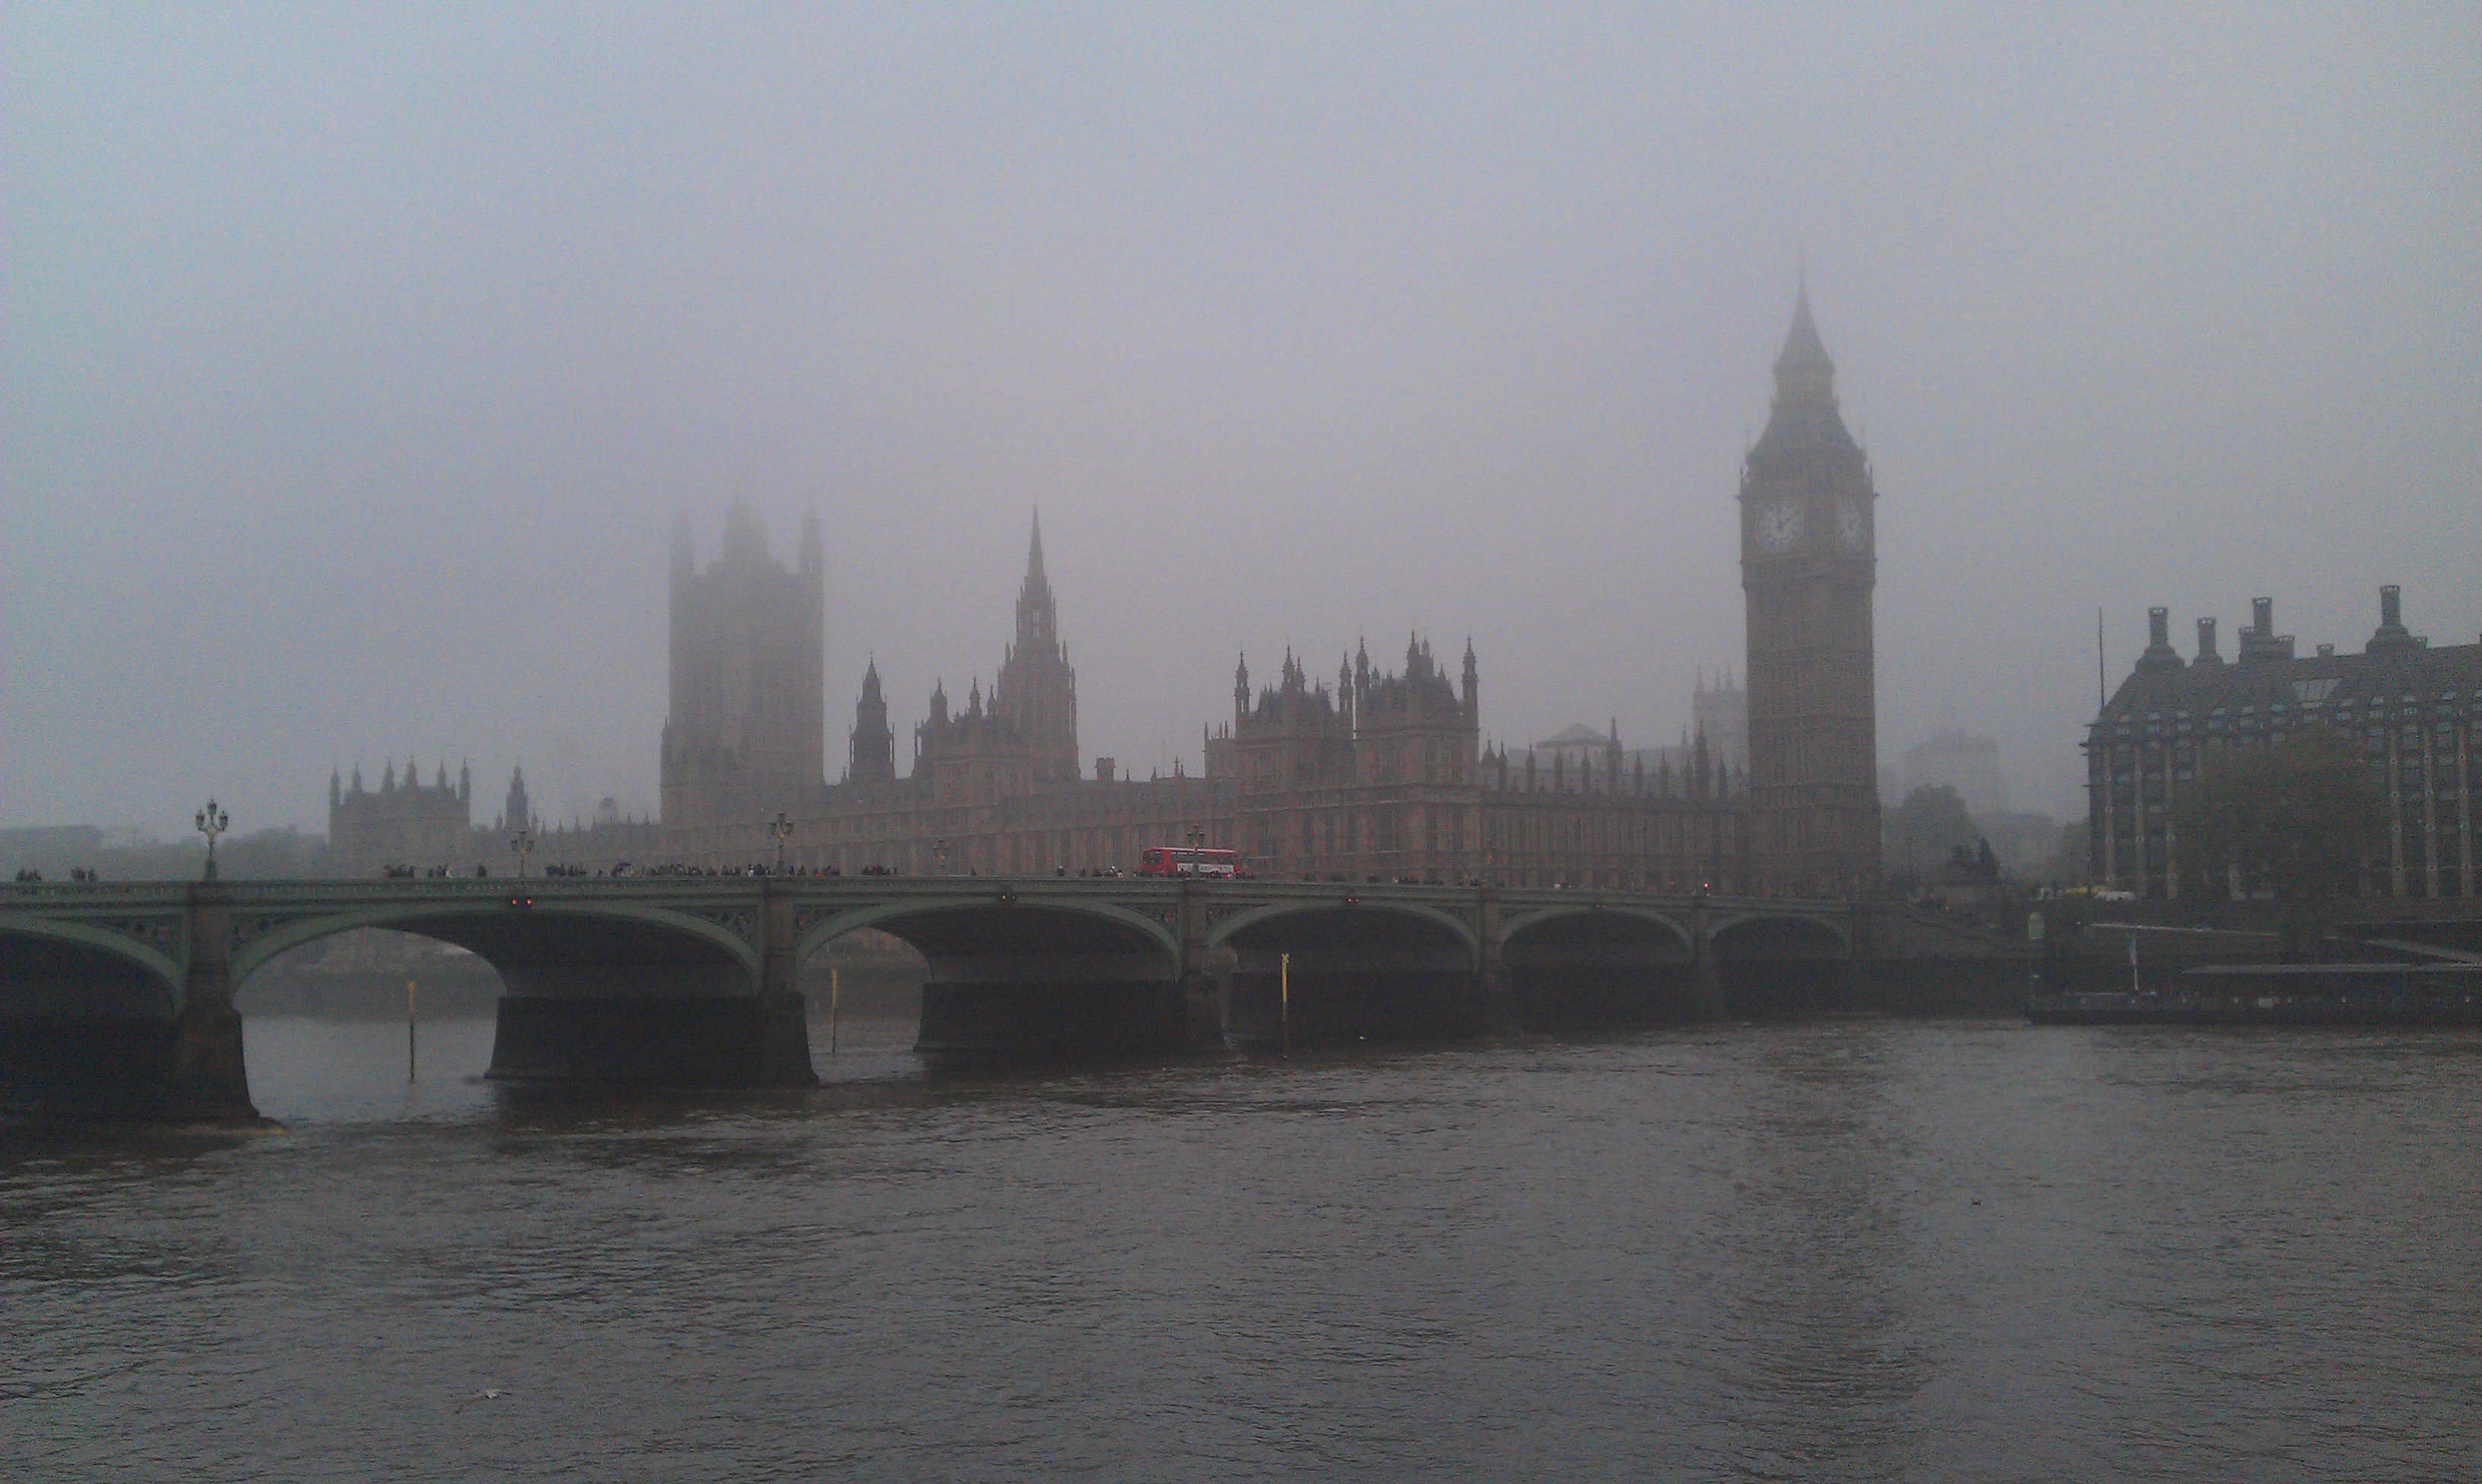 Дождь в лондоне. Лондон туманный Альбион. Вестминстерский дворец в Лондоне туман. Лондонский туман (fumo di Londra) 1966. Англия и Великобритания туманный Альбион.